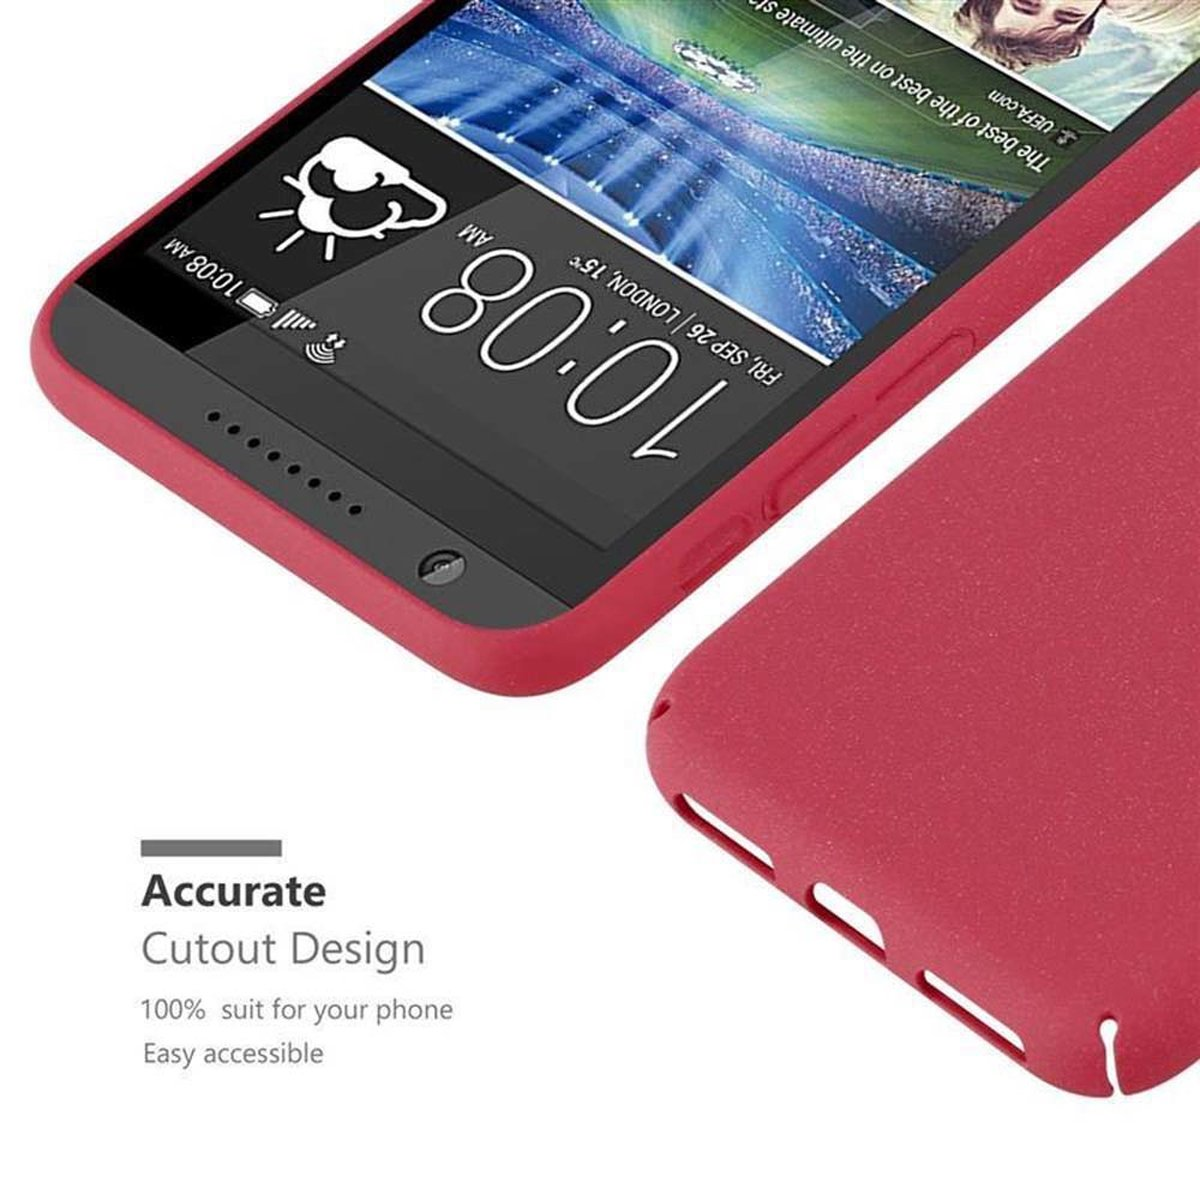 Frosty 820, CADORABO HTC, Case Desire im Style, Hülle Backcover, Hard ROT FROSTY